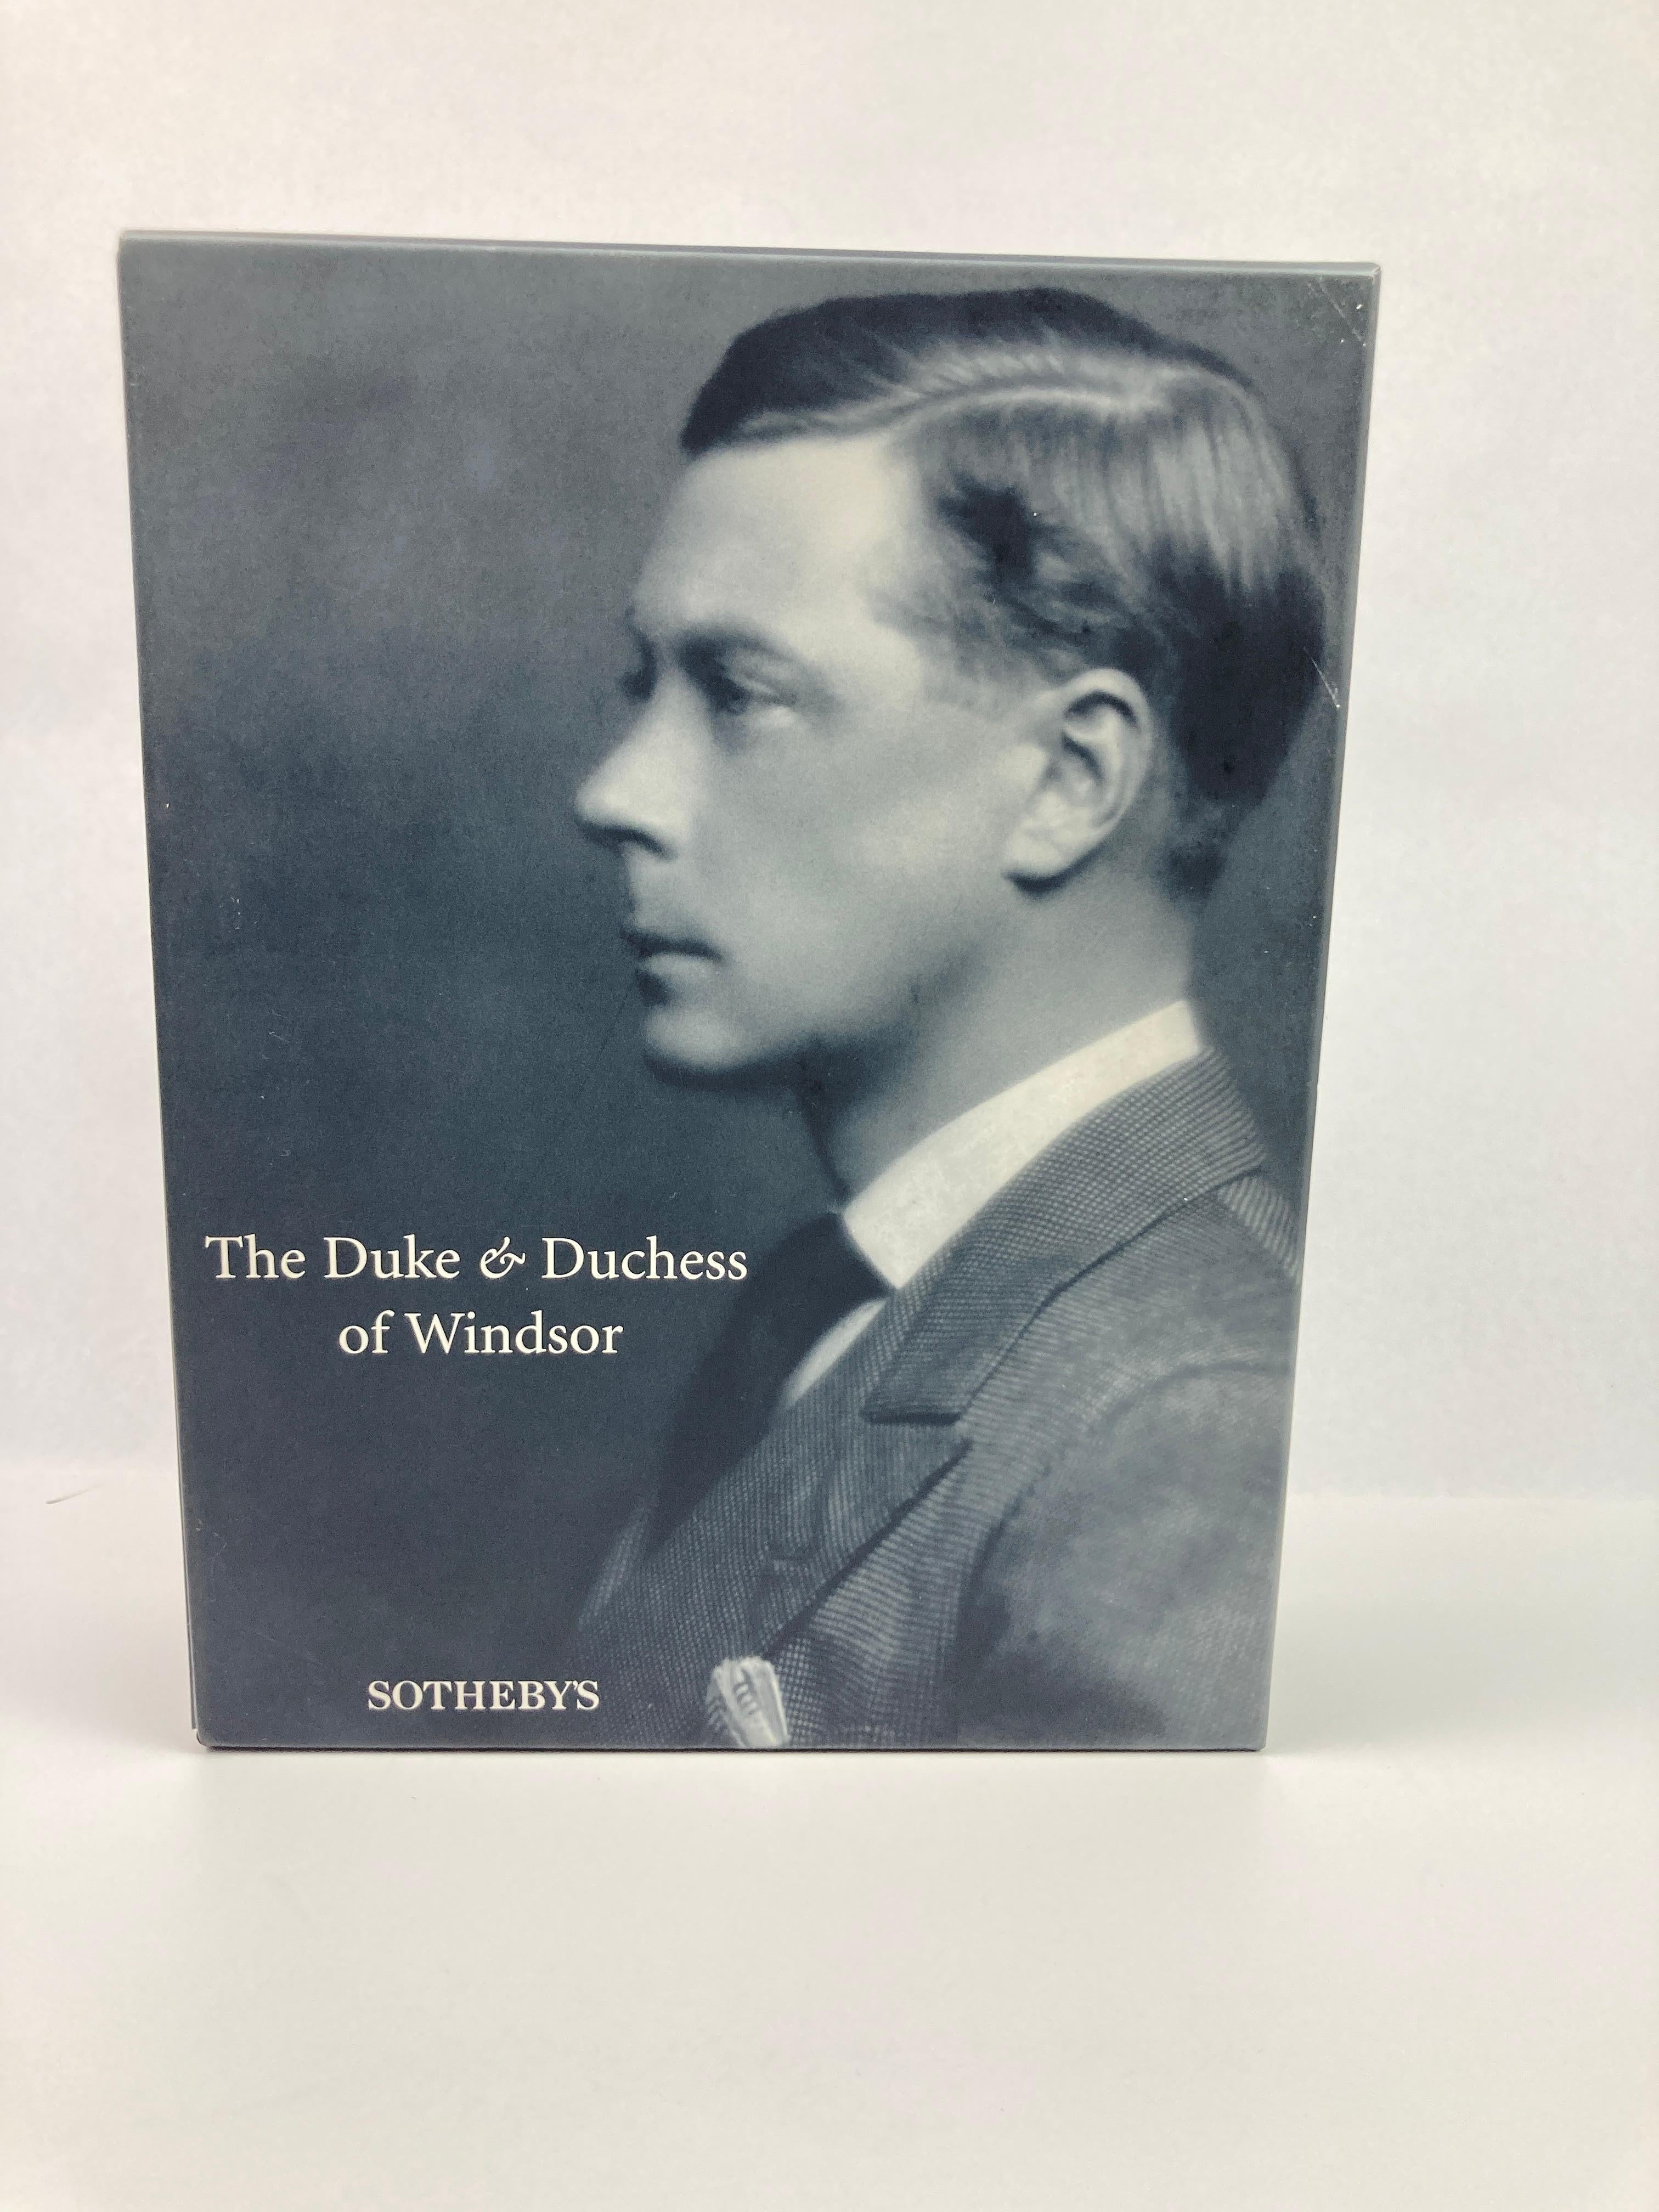 The Duke and Duchess of Windsor Auction Sotheby's Books Catalogs in Slipcase Box (Le duc et la duchesse de Windsor, ventes aux enchères, catalogues de livres de Sotheby's dans une boîte) Unisexe en vente